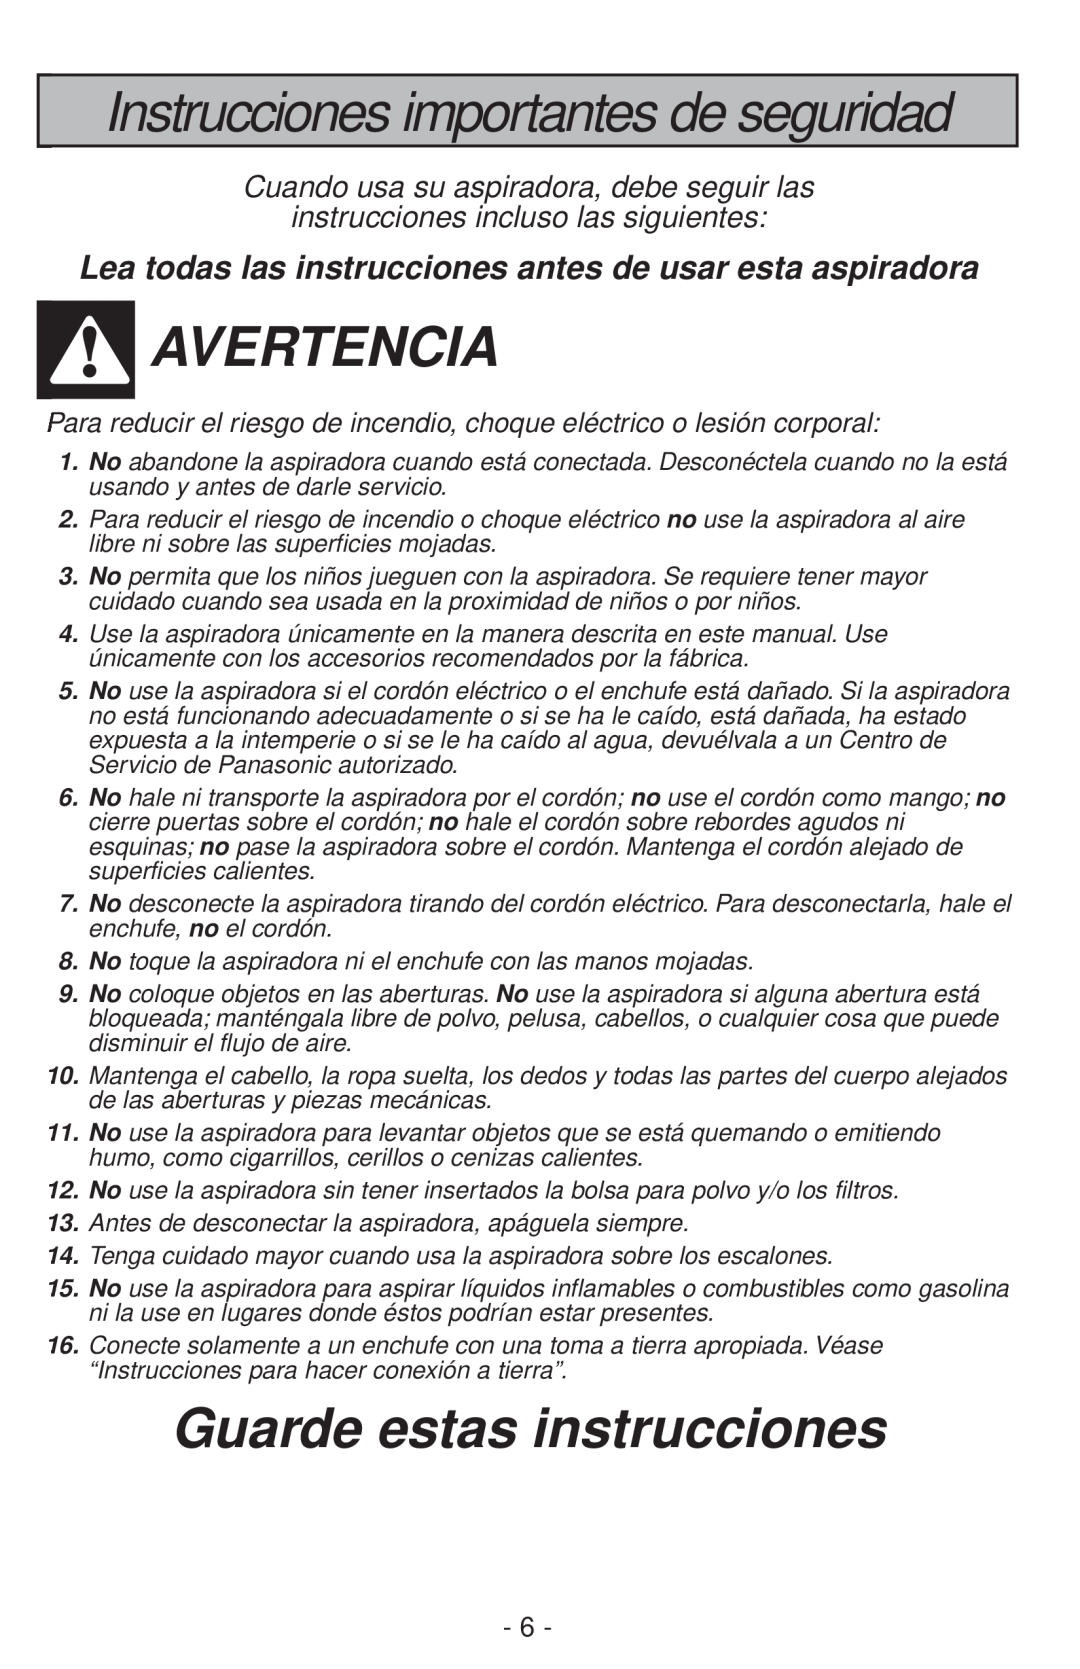 Panasonic MC-V200 manual Instrucciones importantes de seguridad, Avertencia, Guarde estas instrucciones 